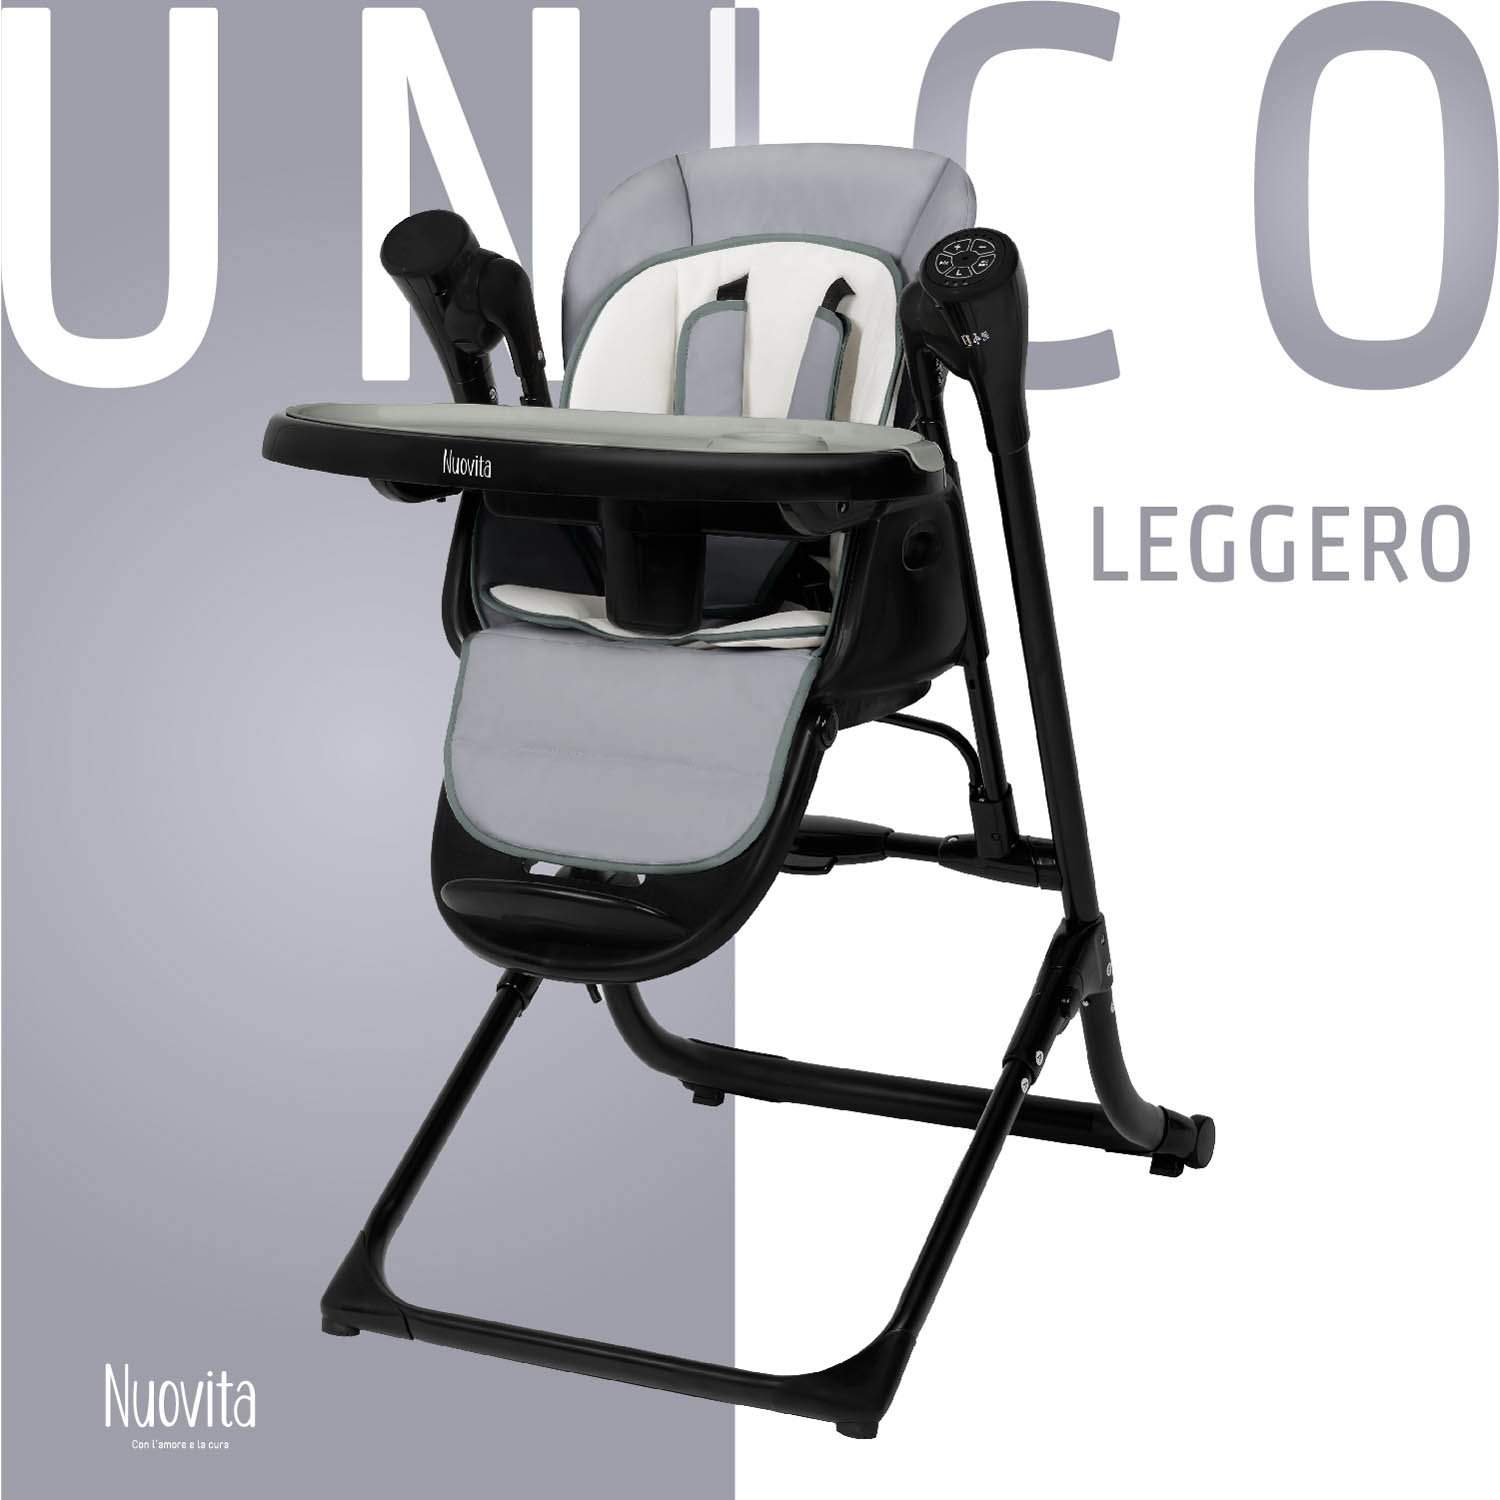 Стульчик для кормления с электронной функцией качения Nuovita Unico Leggero Nero серый стульчик для кормления nuovita с электронной функцией качения unico story